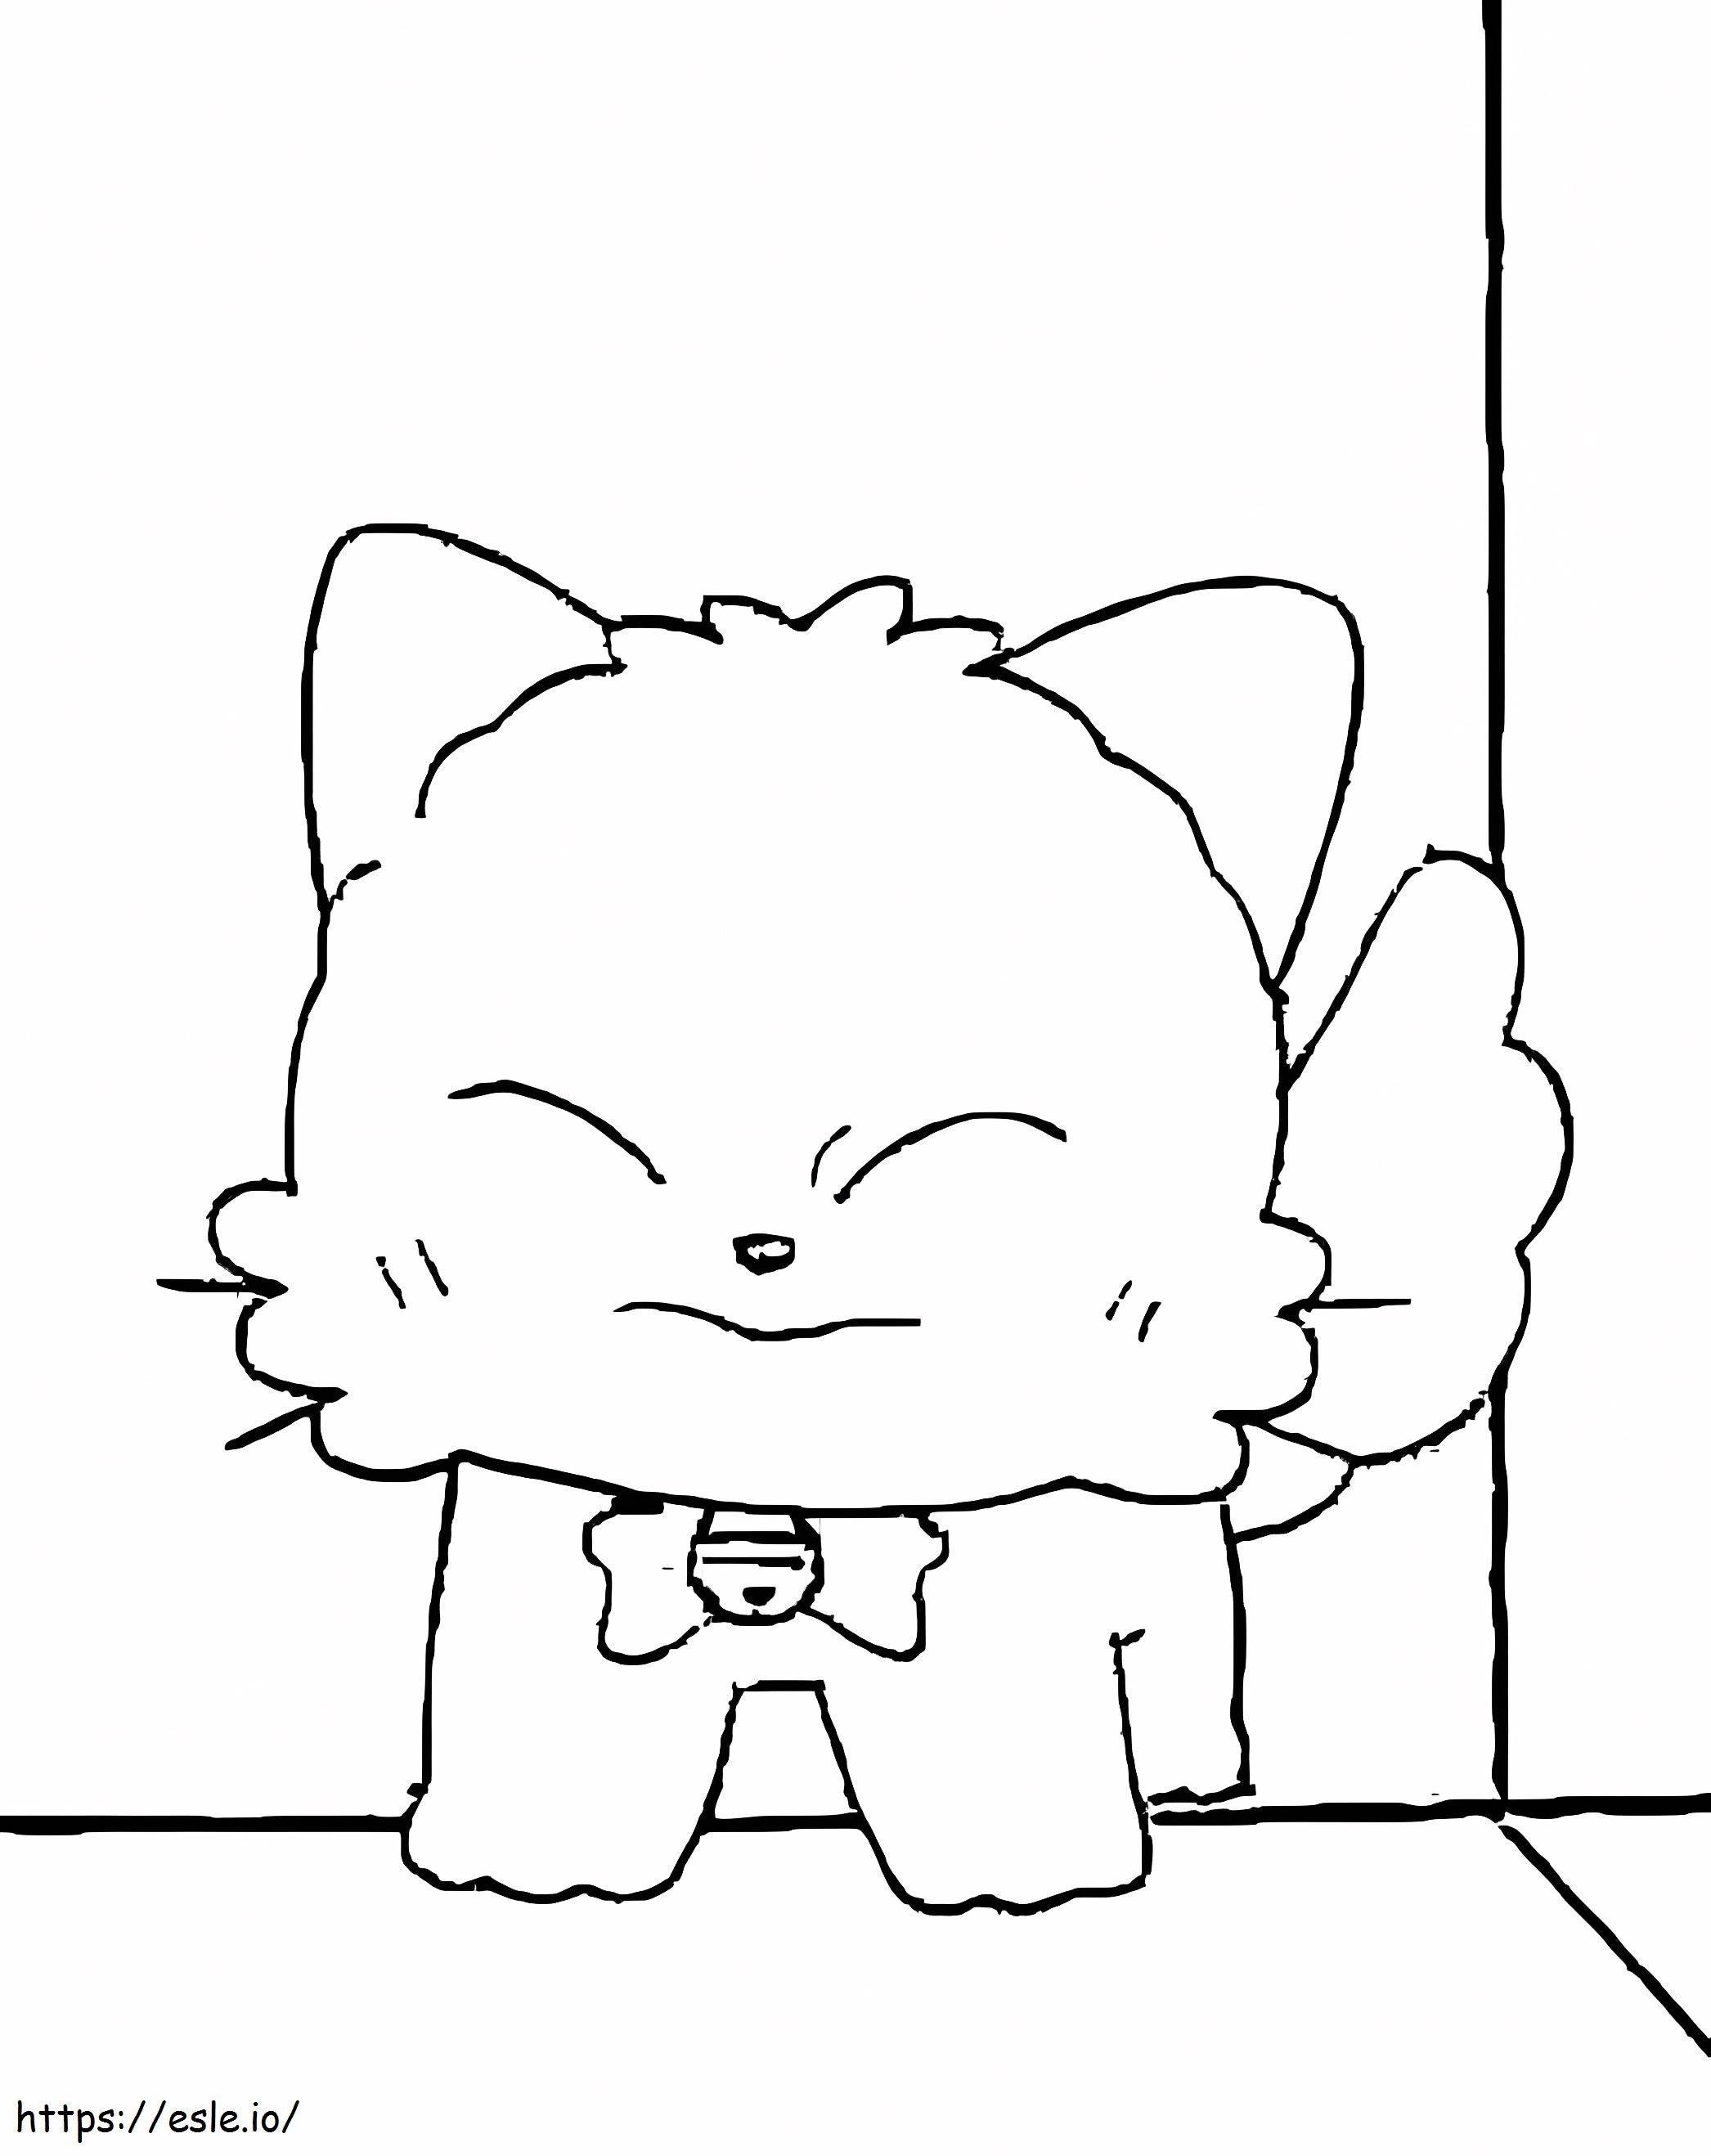 Süße Momo-Katze ausmalbilder